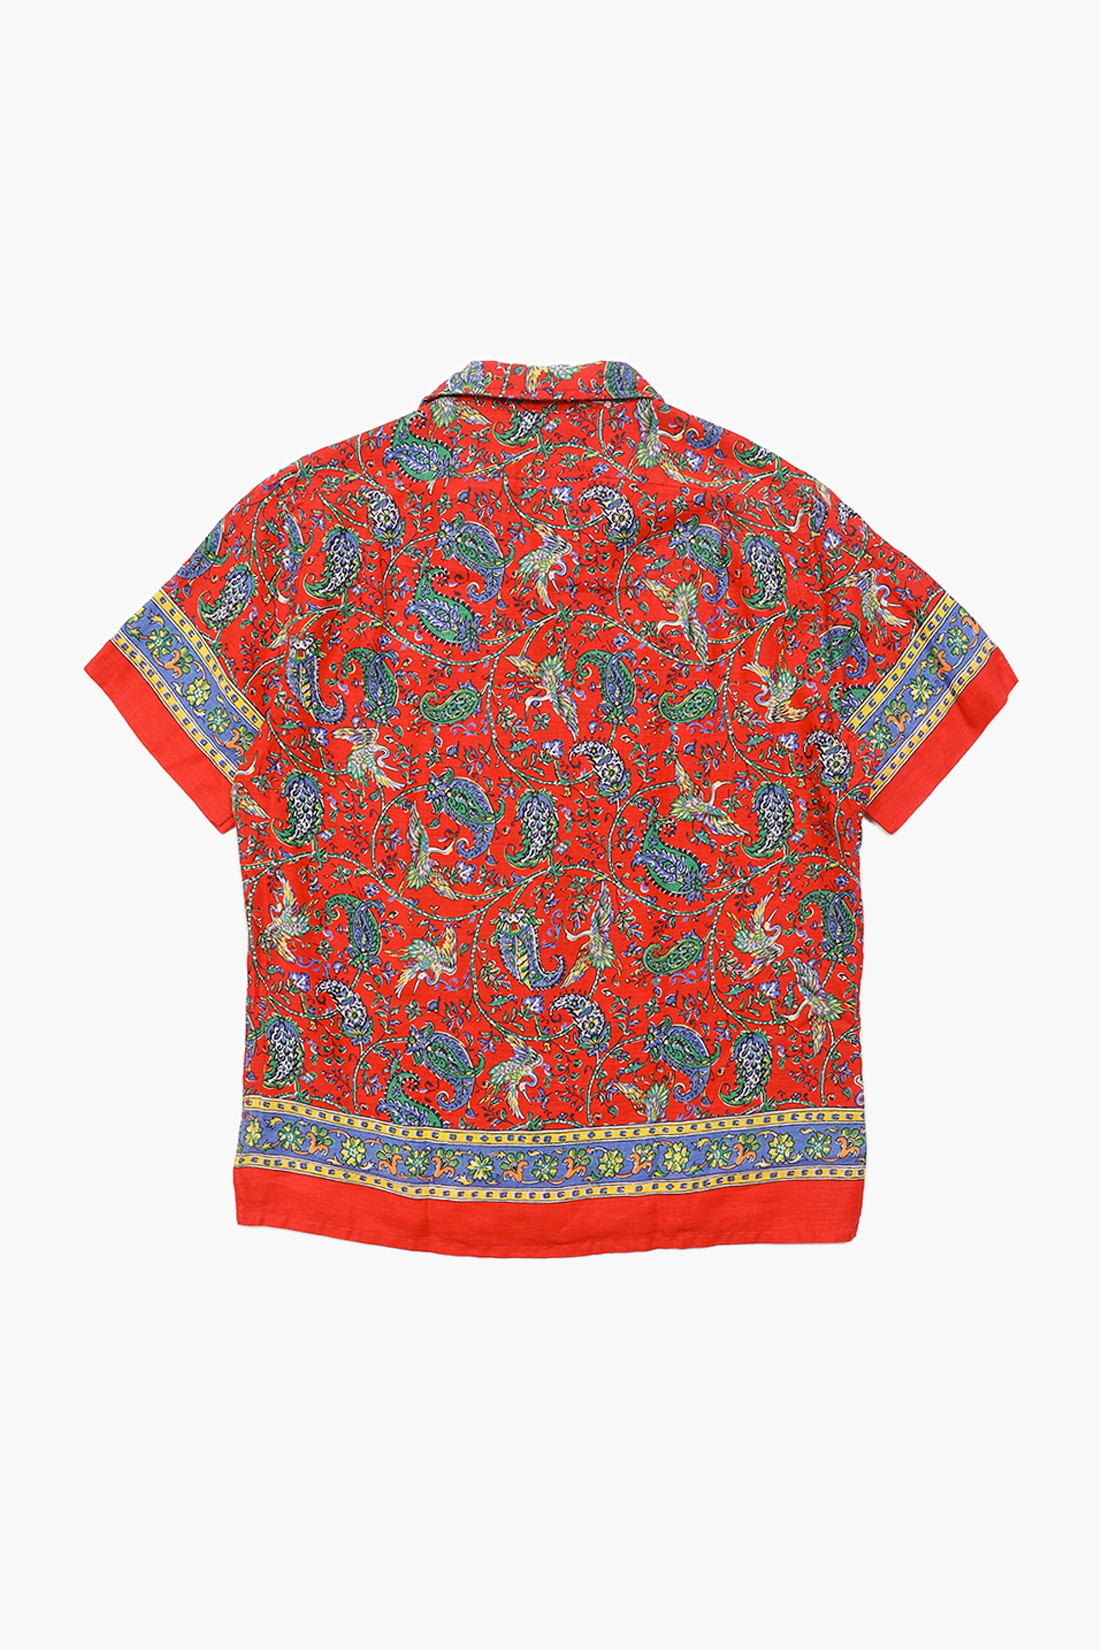 Polo ralph lauren Classic fit linen s/s shirt Multi paisley - ... | EN